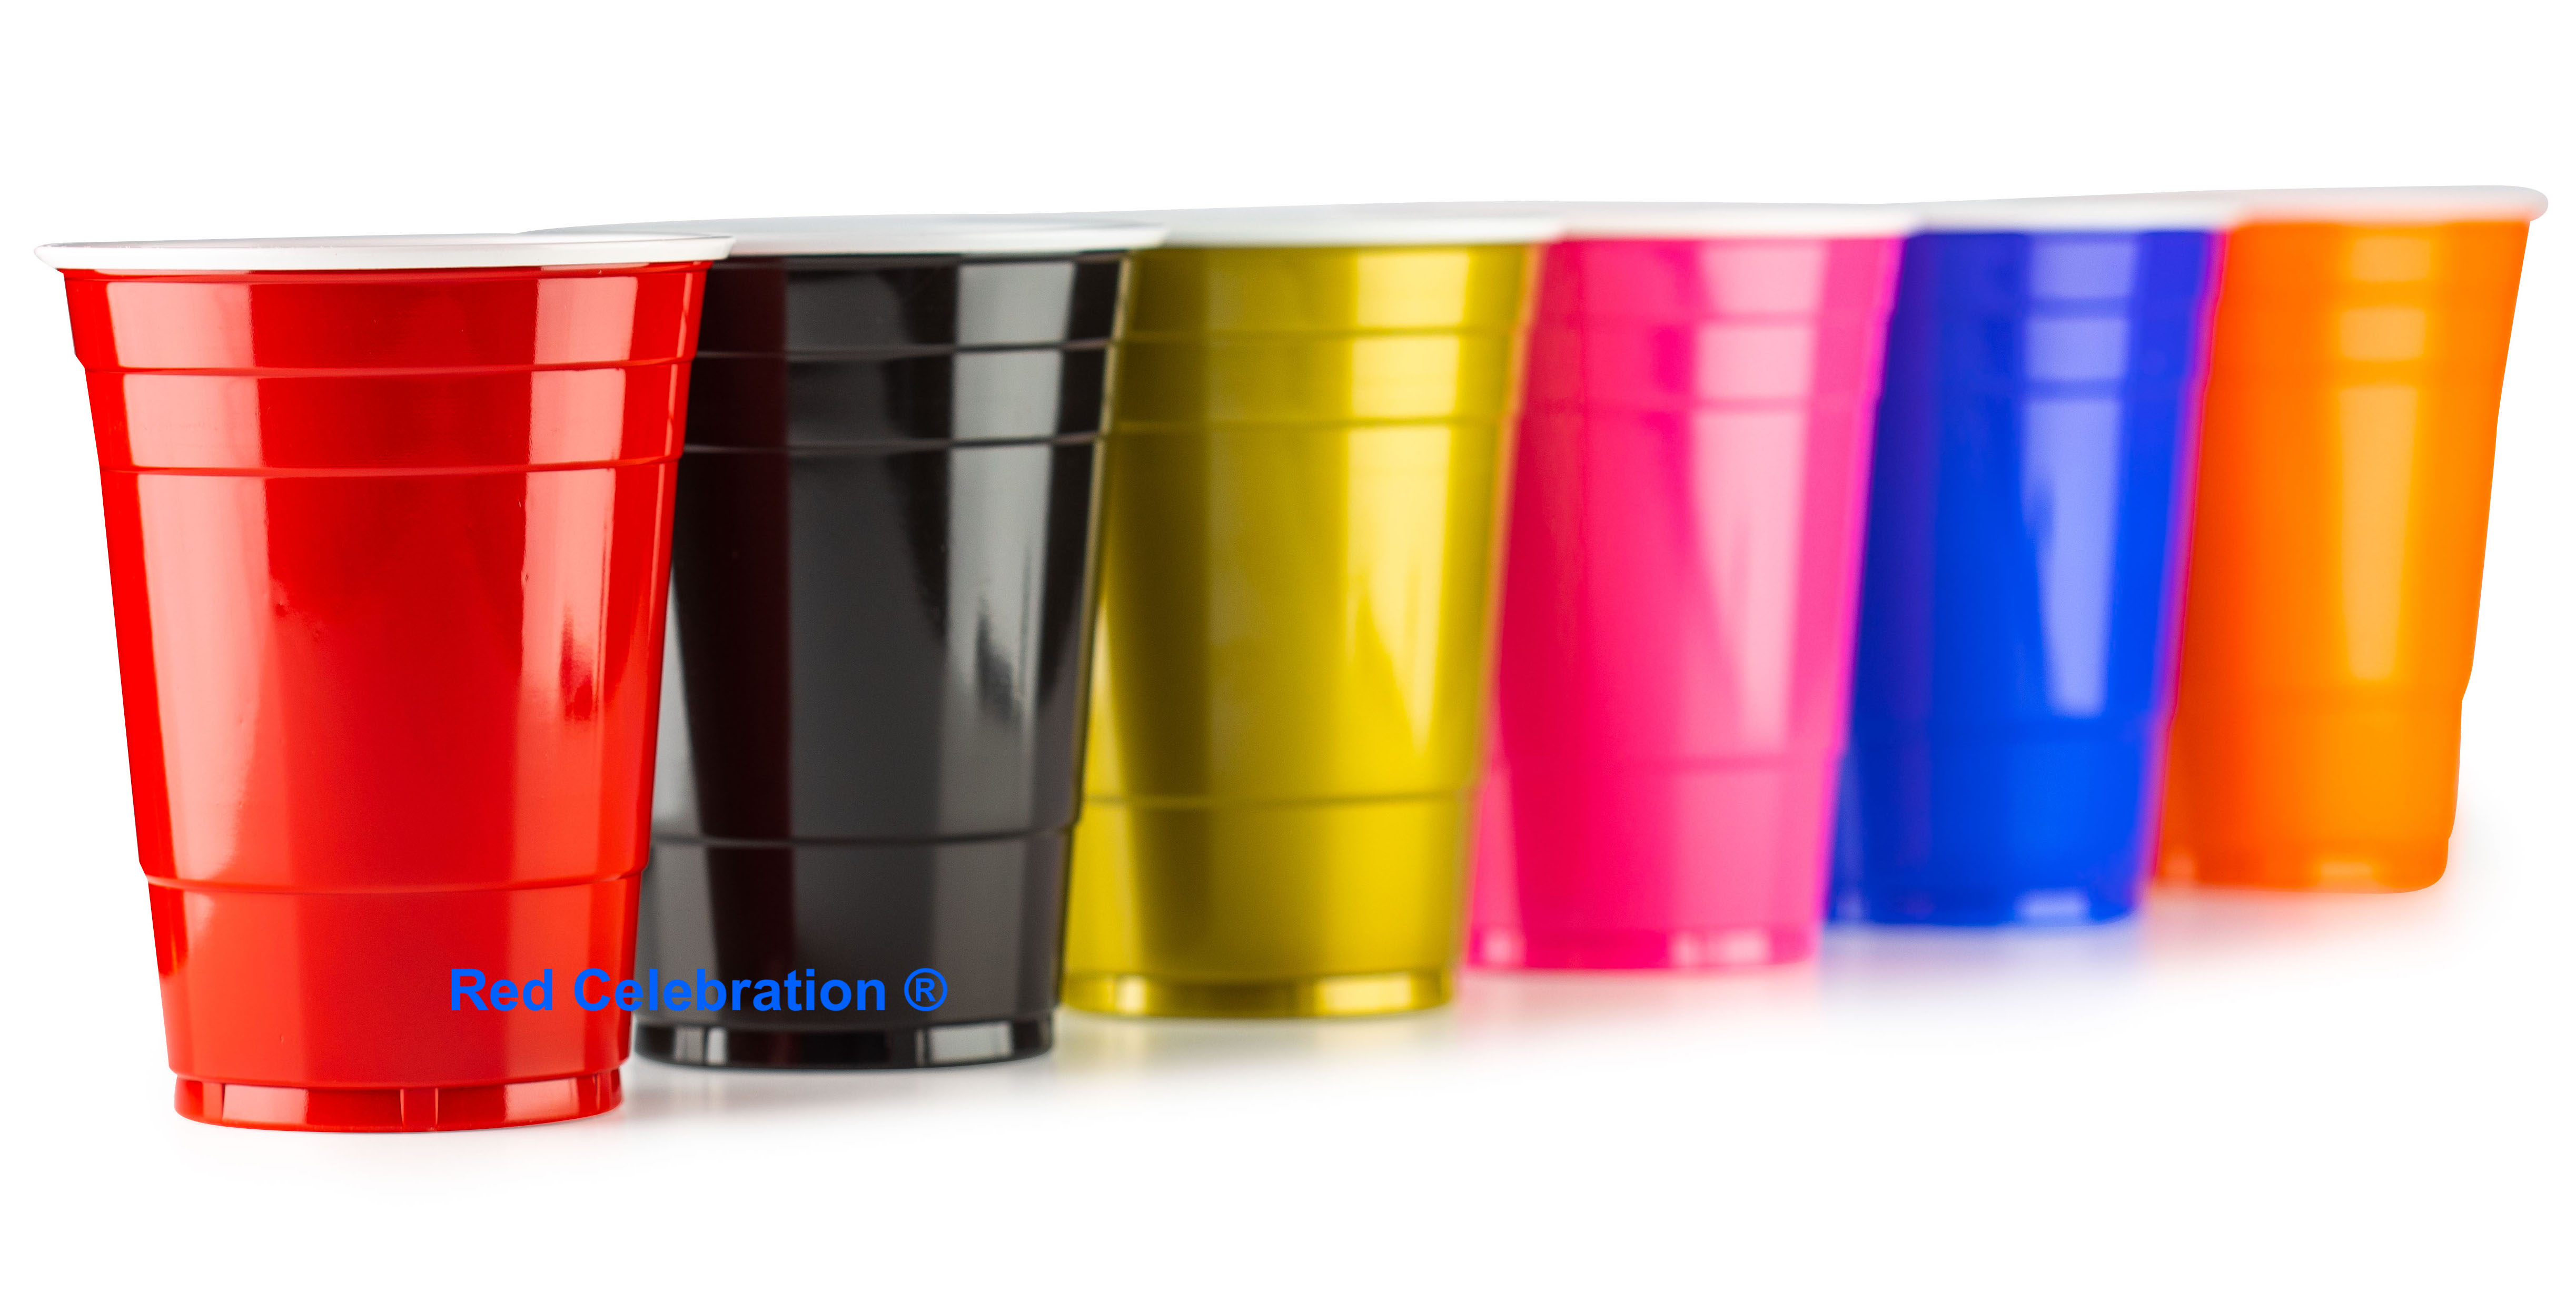 De American cups in Red, Black & Pink | Mix Your Colors voor €11,99